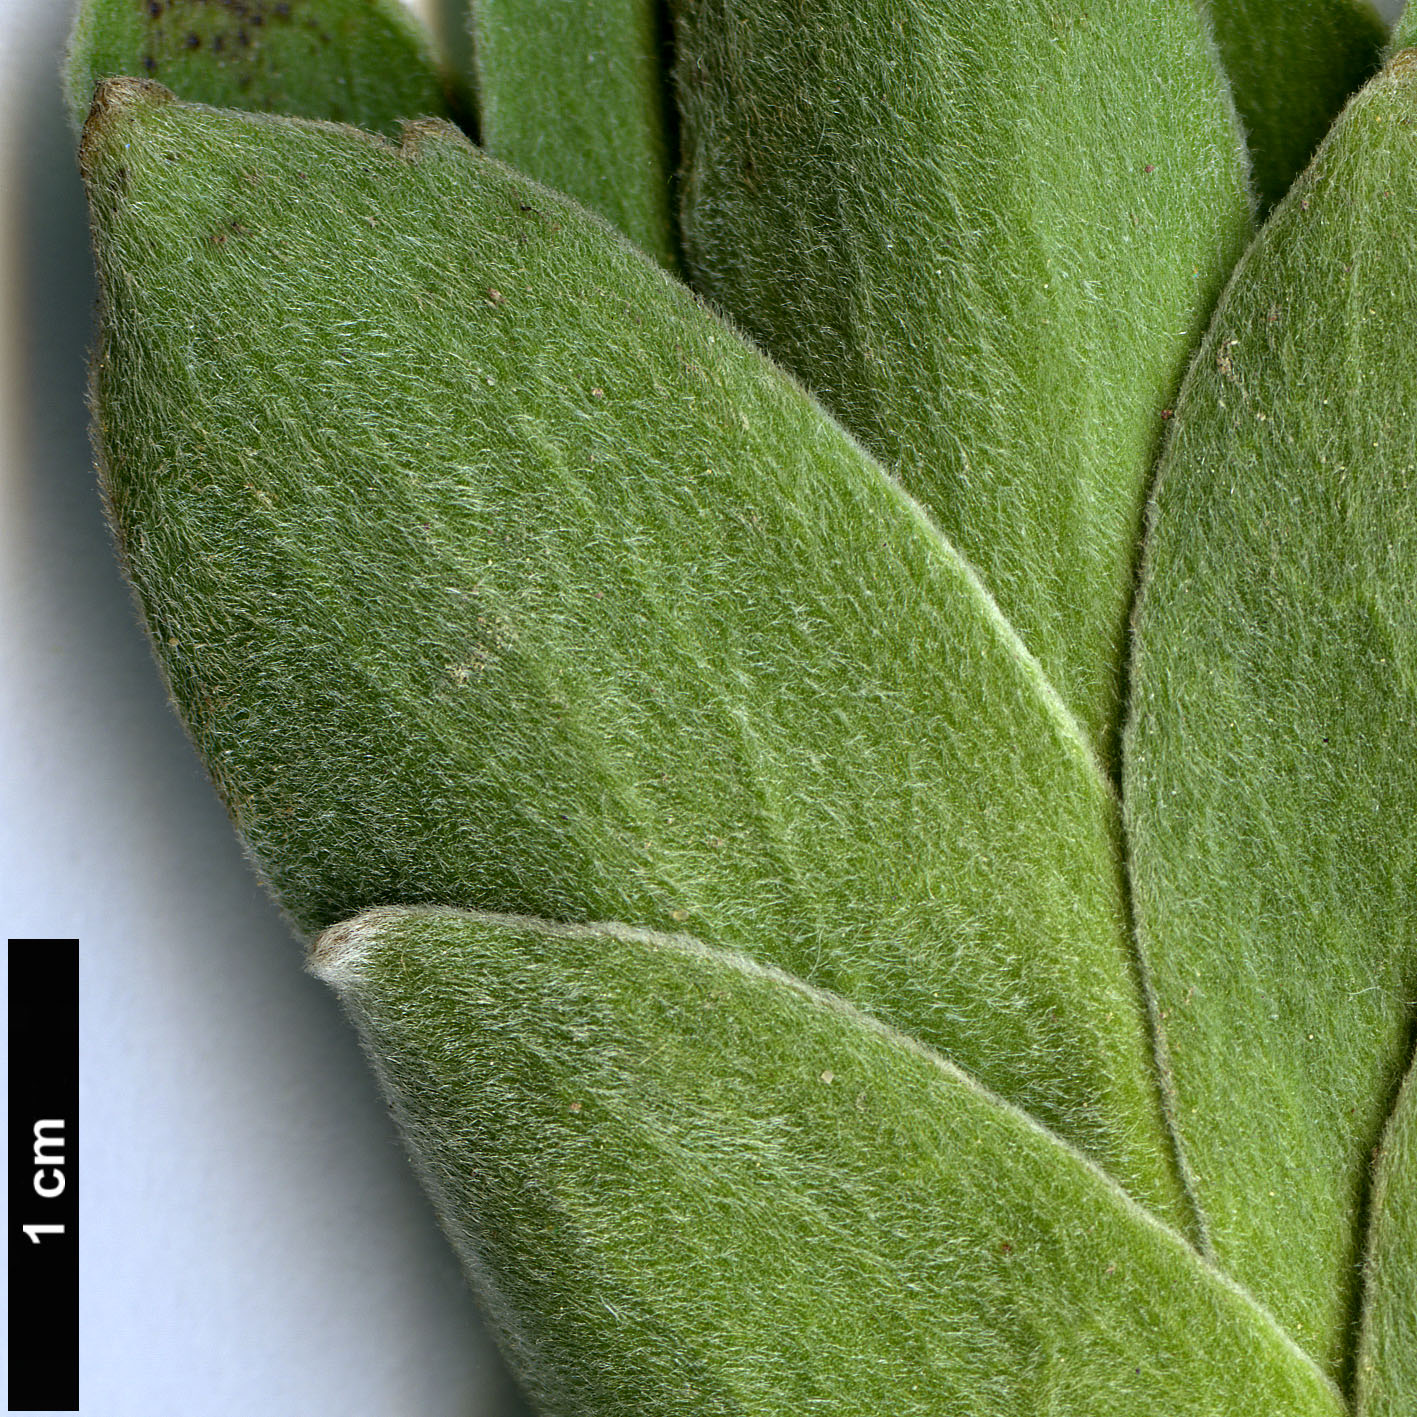 High resolution image: Family: Proteaceae - Genus: Leucospermum - Taxon: oleifolium